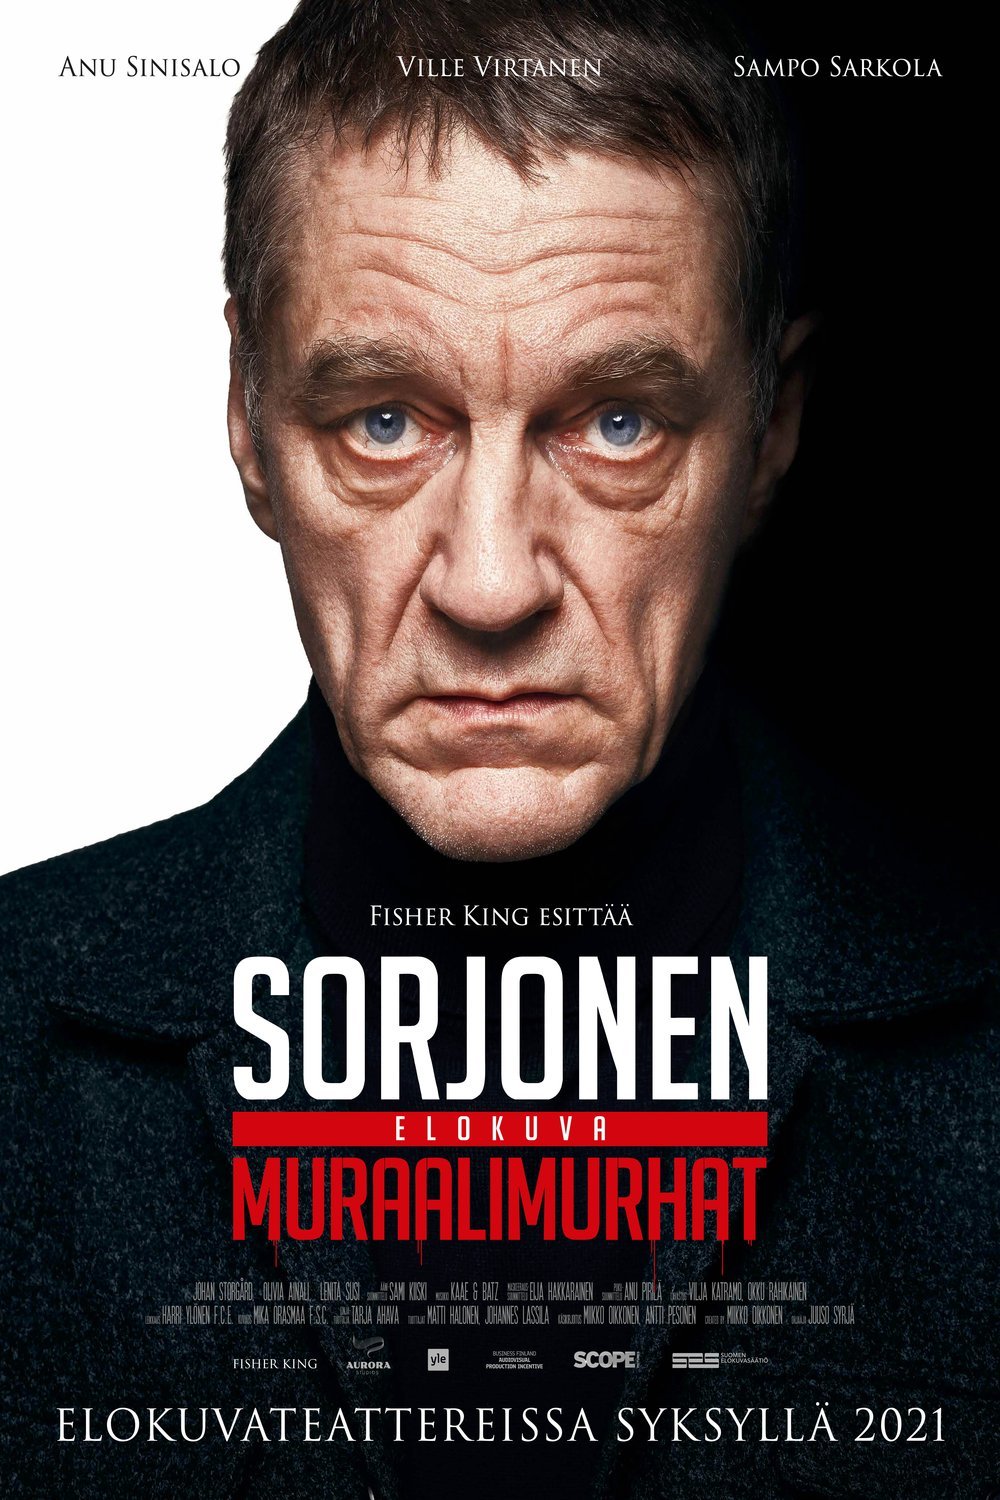 Finnish poster of the movie Sorjonen: Muraalimurhat